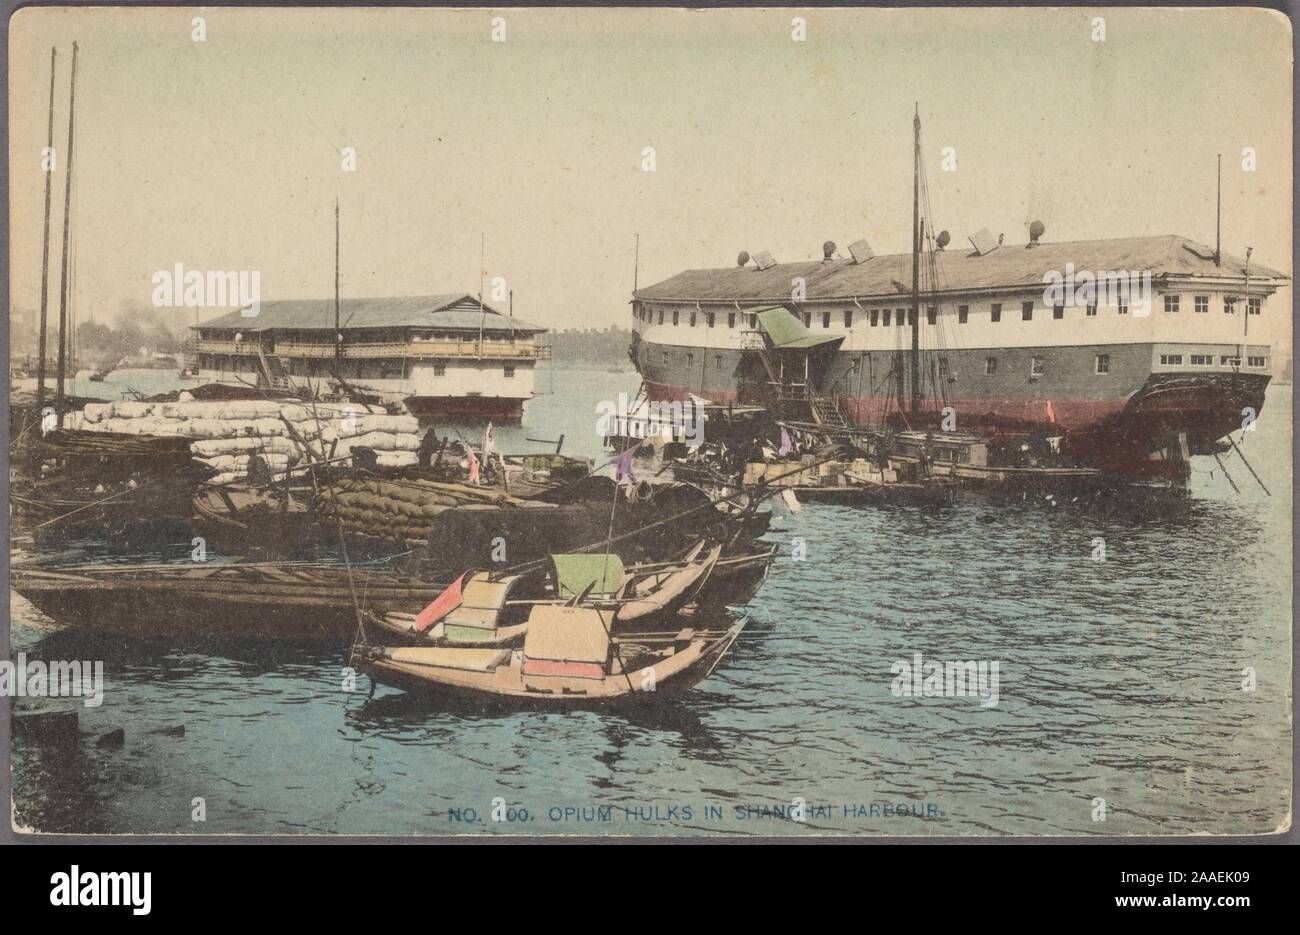 Cartolina illustrata di un paio di sampan barche e oppio le carcasse nel porto di Shanghai, Shanghai, Cina, pubblicato dalla Akasawa Arte Co, 1905. Dalla Biblioteca Pubblica di New York. () Foto Stock